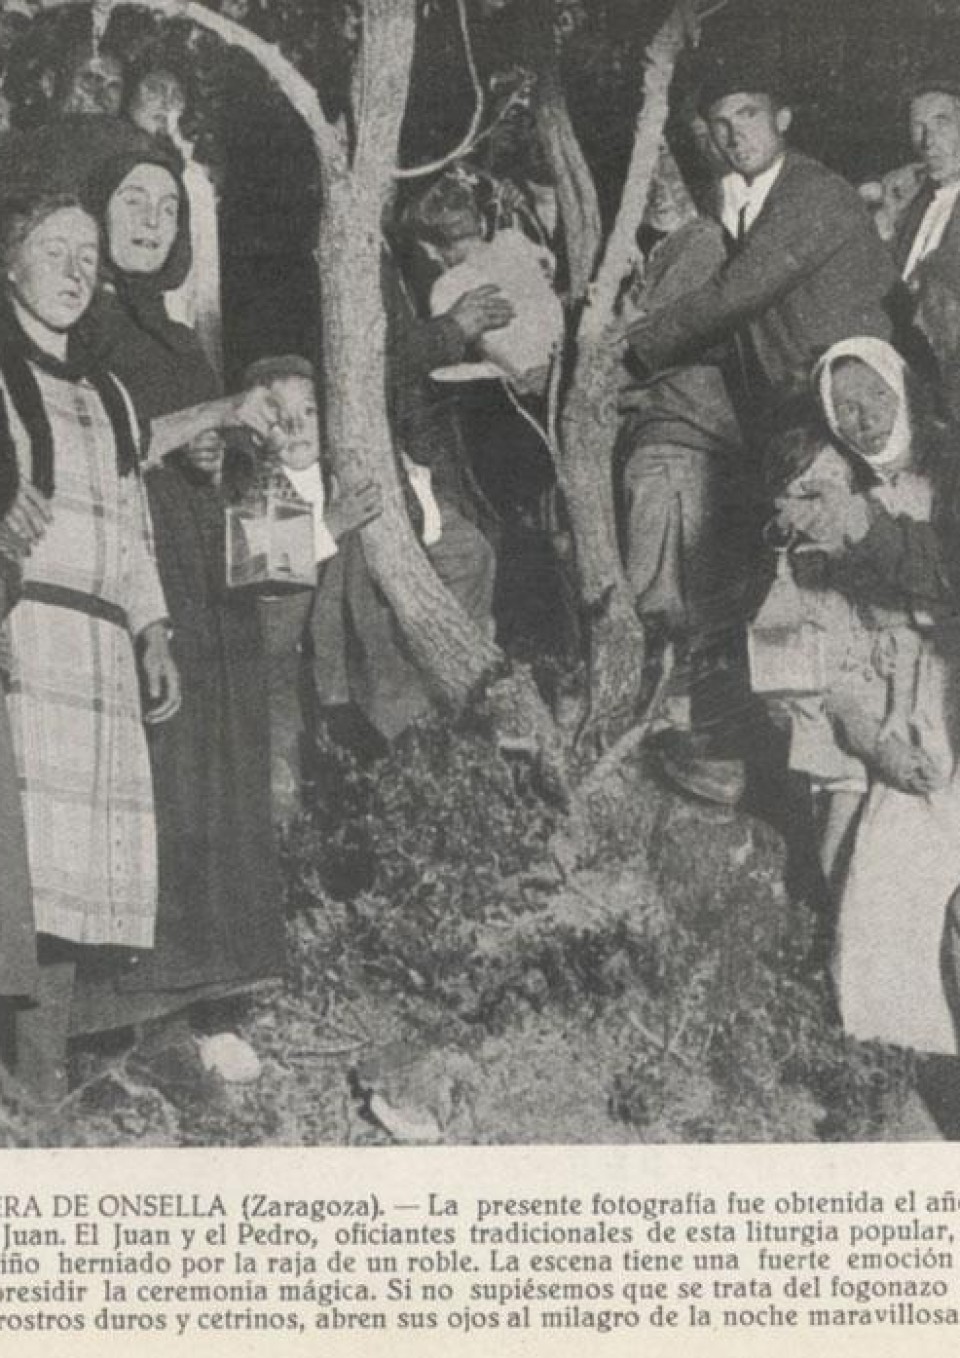 Imagen Recorte de prensa sobre el rito del herniado publicado en El pirineo espanol en 1949.